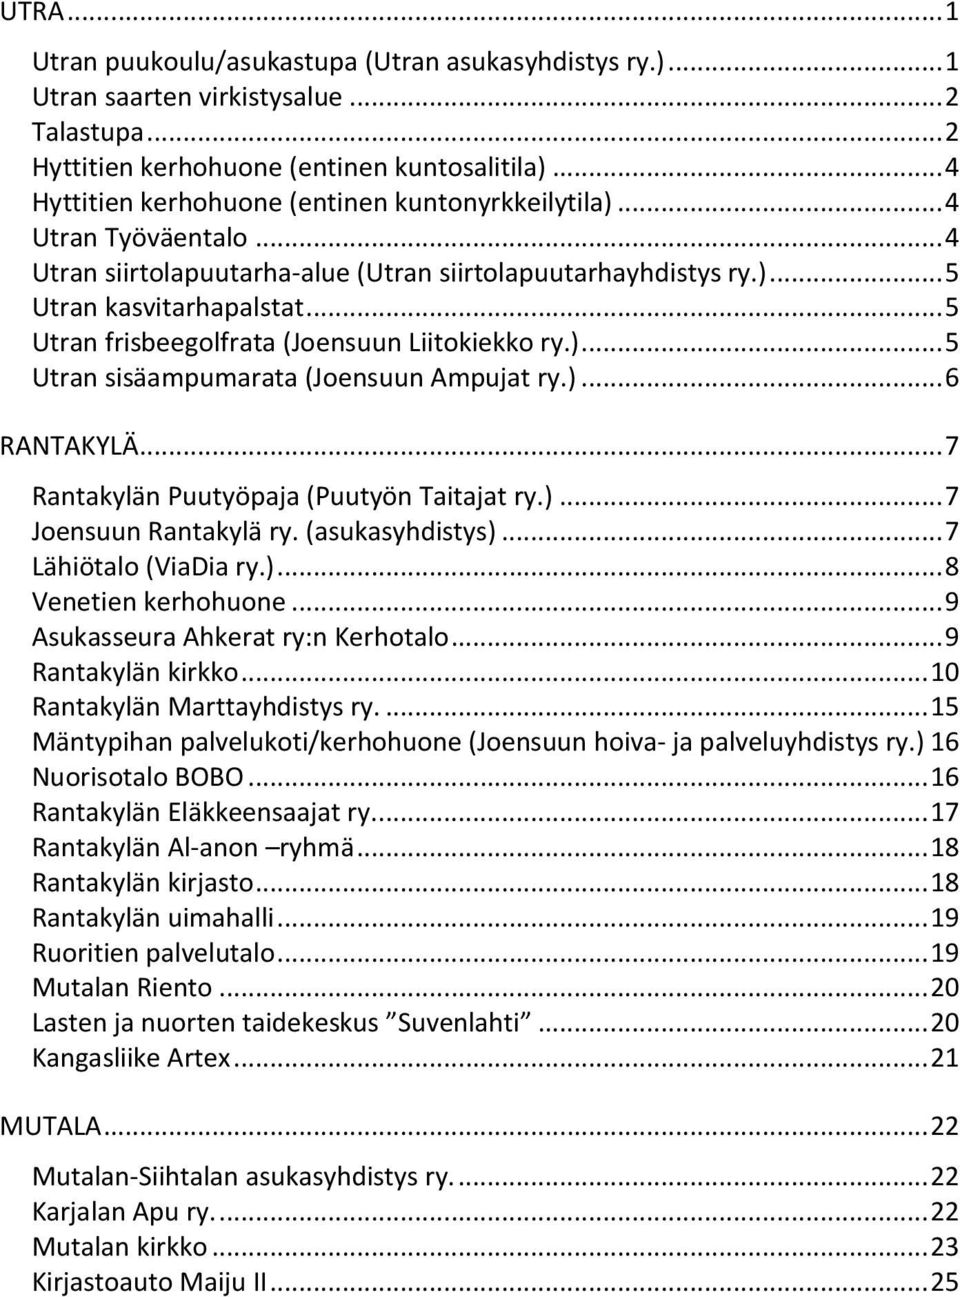 KOHTAAMISPAIKKOJA. Rantakylä-Utra-Mutala-alueella. Olet tervetullut mukaan!  - PDF Ilmainen lataus